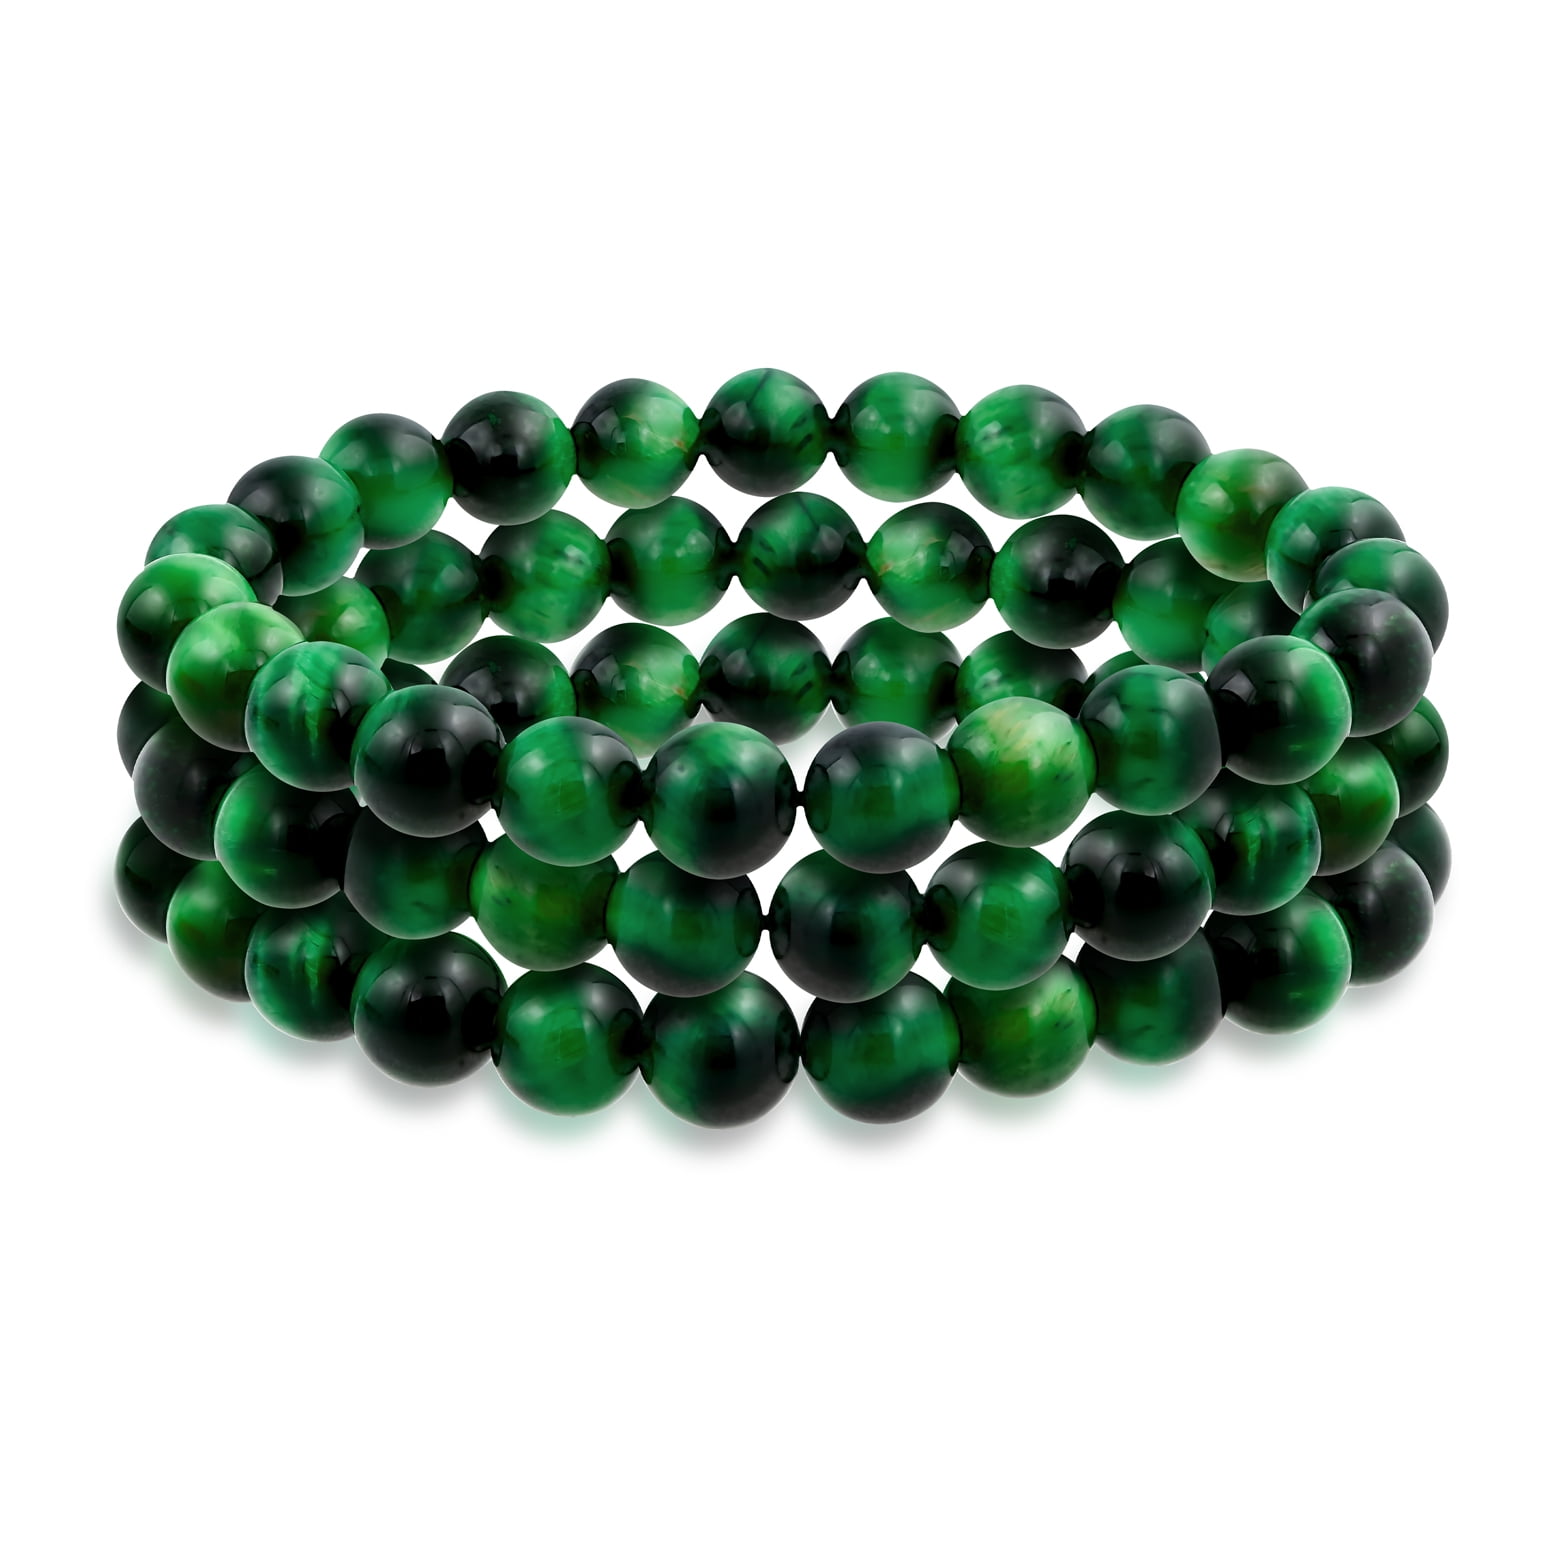 Green Tiger Eye Beads,round Tiger Eye Beads,hunter Green Gemstone